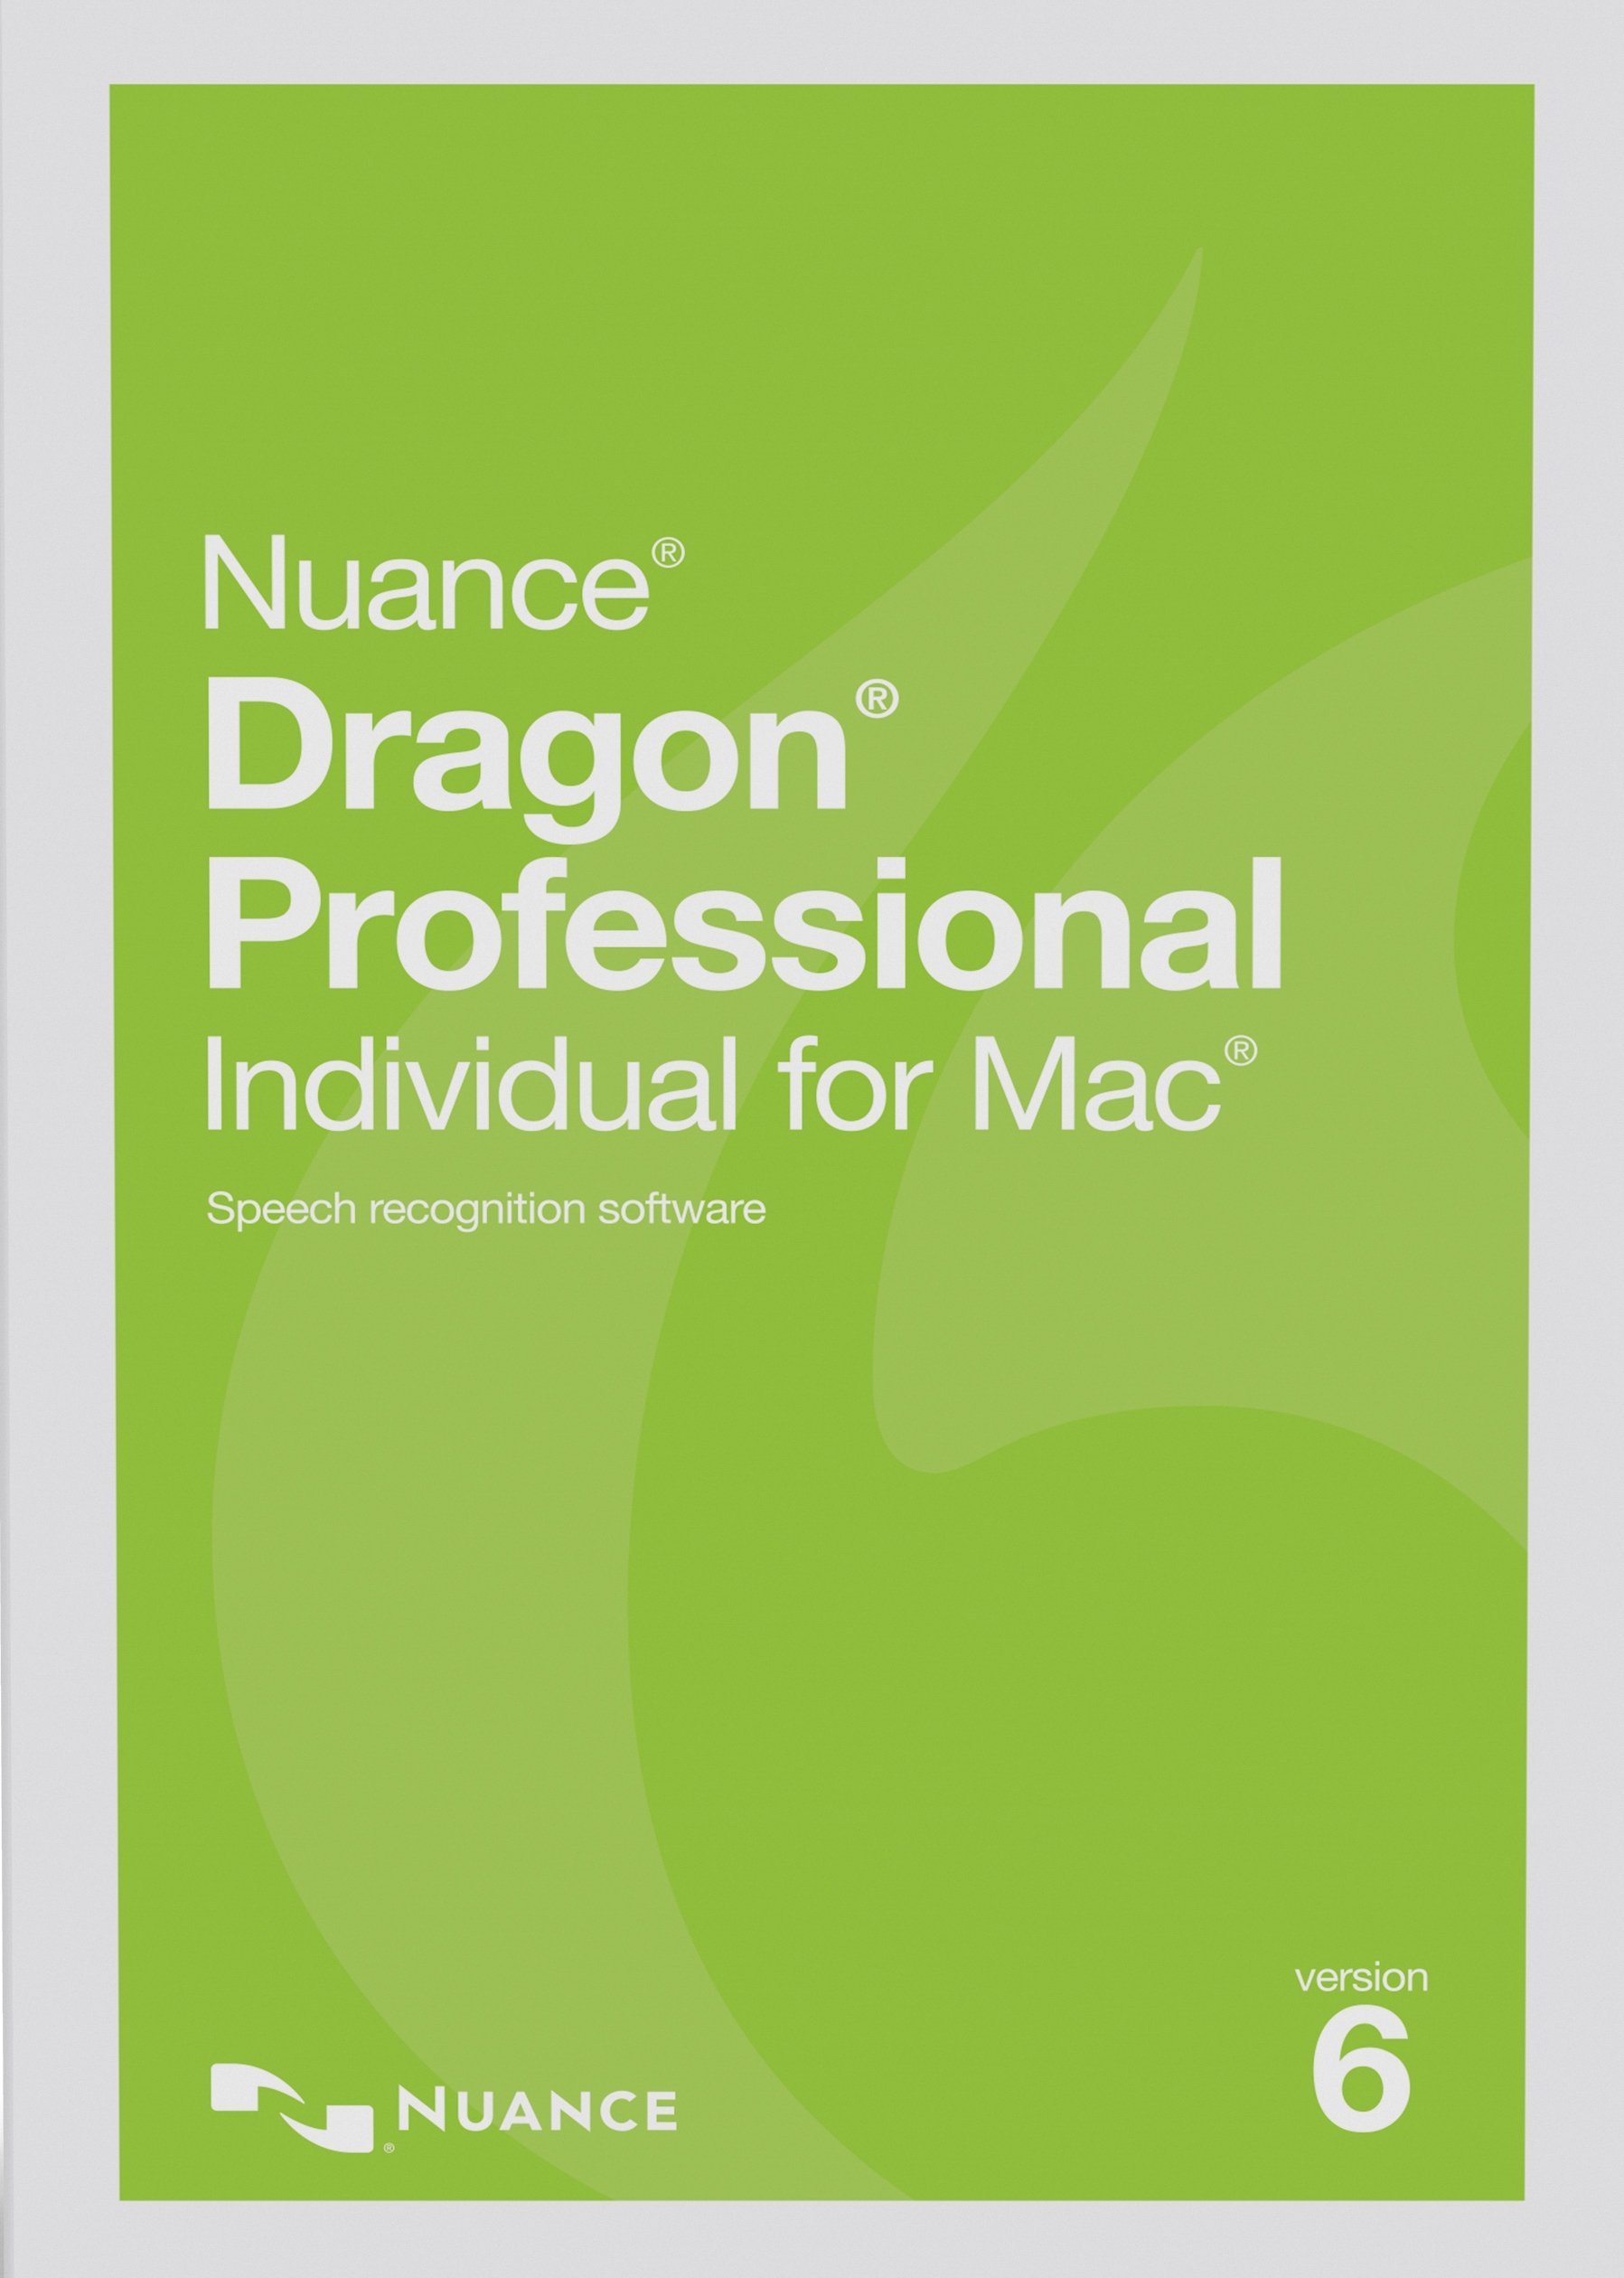 Dragon naturally speaking download free mac version